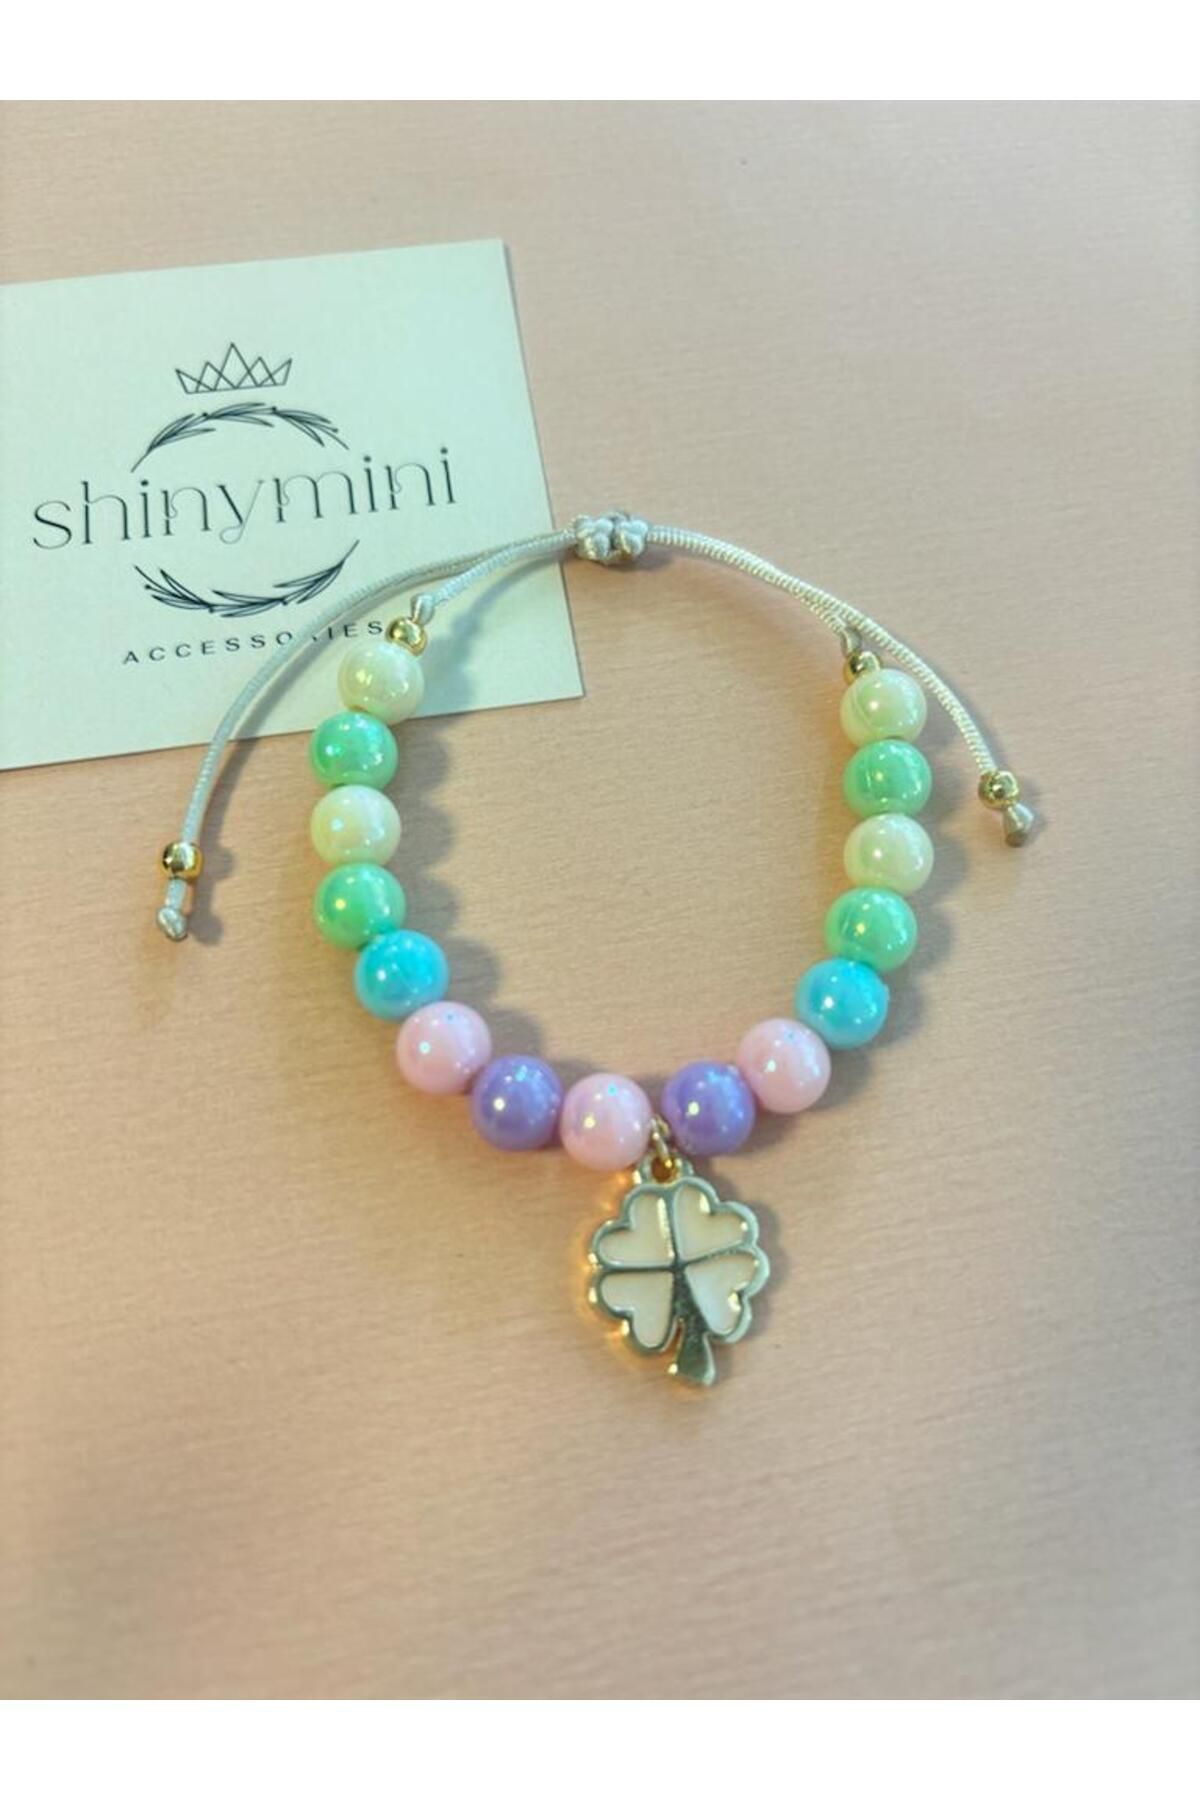 shinymini accessories Özel Tasarım Kız Çocuk Yonca Detaylı Renkli Boncuk Ayarlanabilir İpli Bileklik